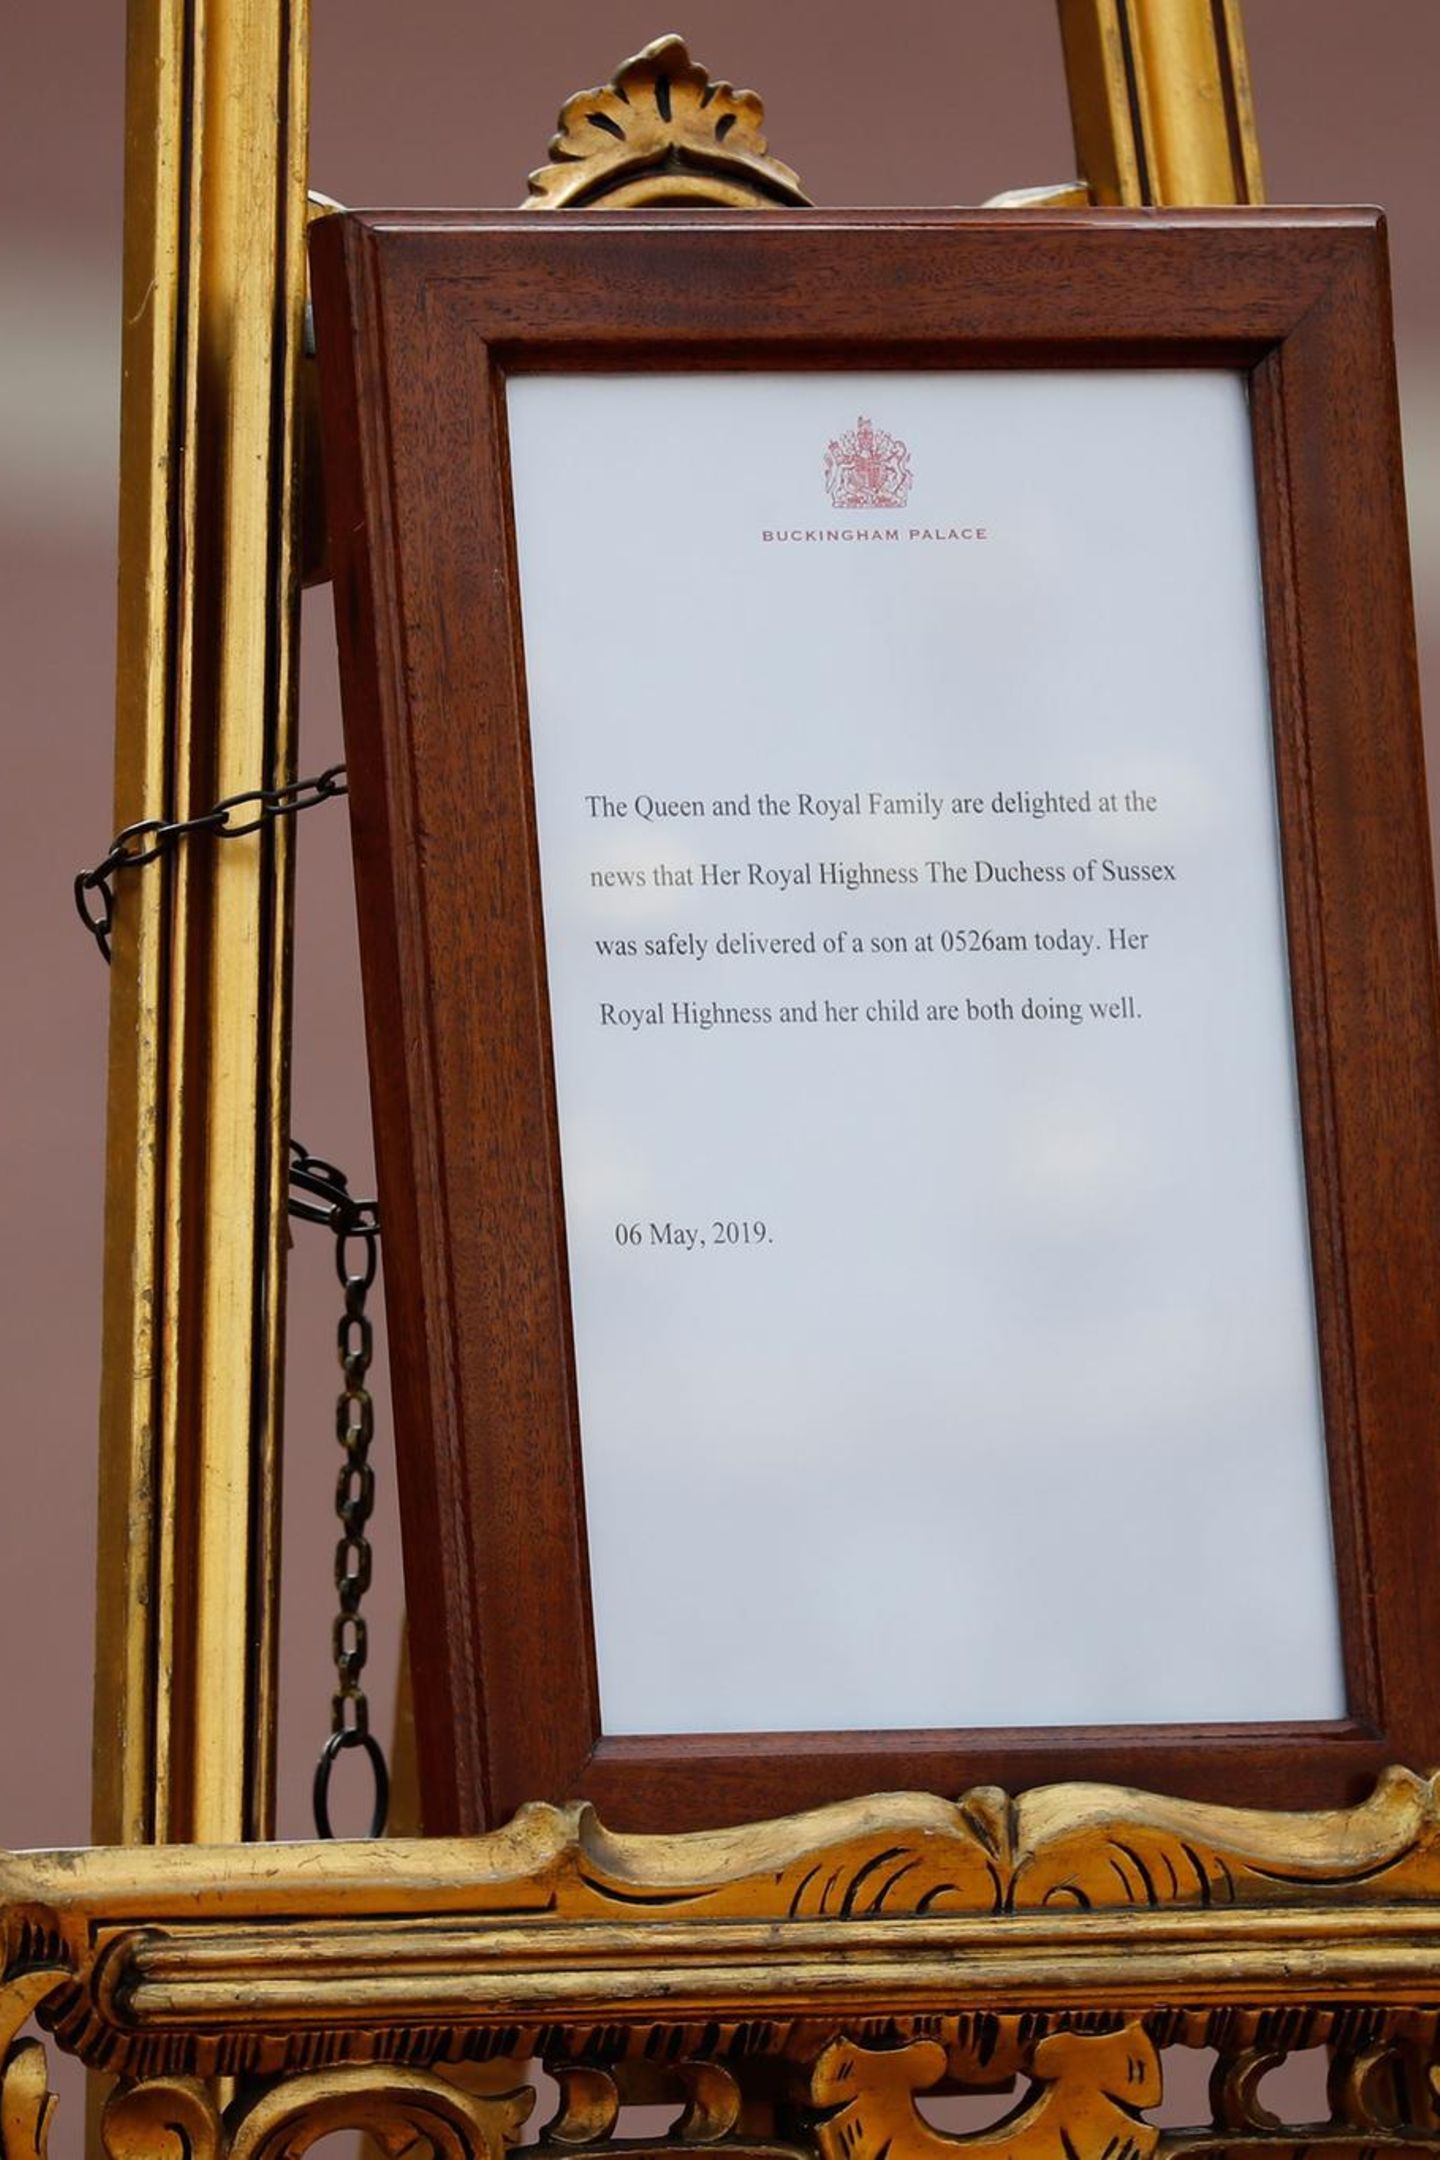 Vor dem Palast wird die Tafel aufgestellt, auf der die britische Königsfamilie die Geburt des Nachwuchses verkündet. Der kleine Sohn von Meghan und Harry hat demnach morgens um 5.26 Uhr das Licht der Welt erblickt.